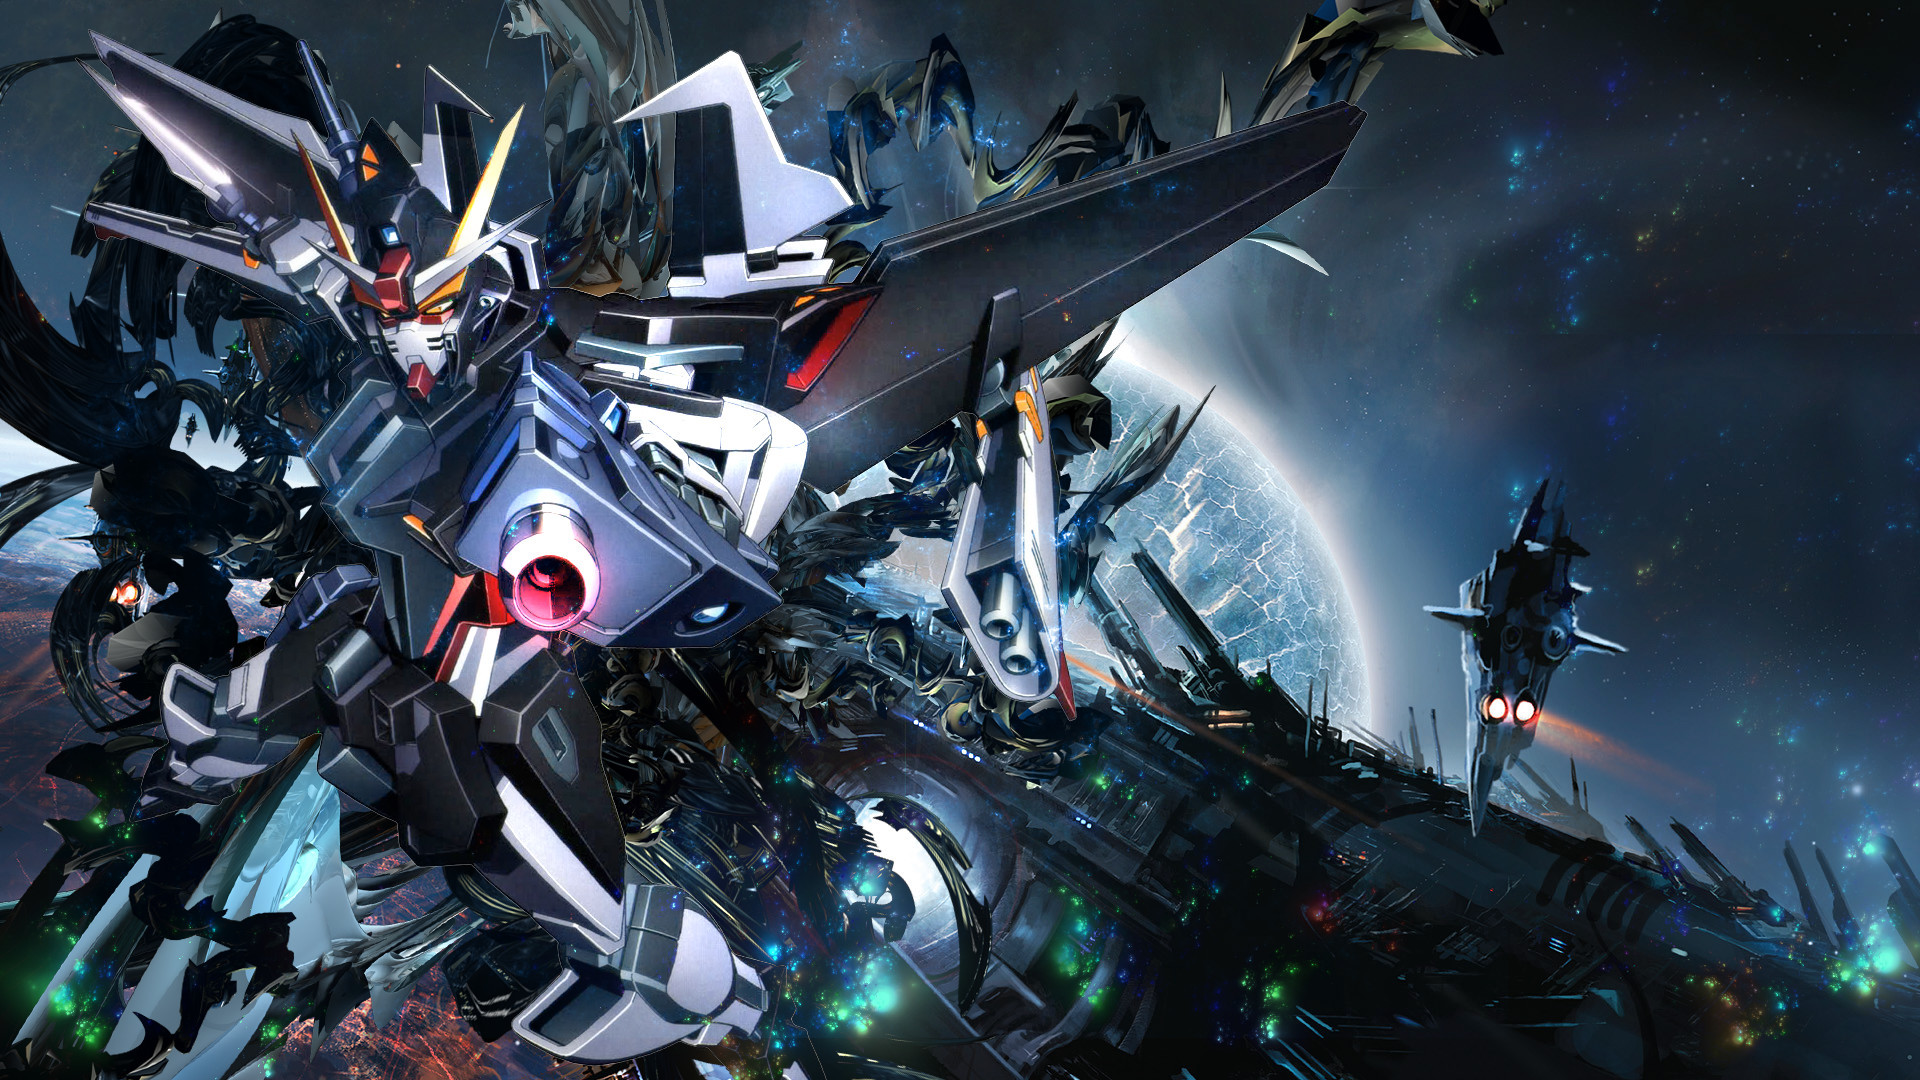 1920x1080  175 Gundam HD Wallpapers | Backgrounds - Wallpaper Abyss | Best  Games Wallpapers | Pinterest | Gundam and Gundam art